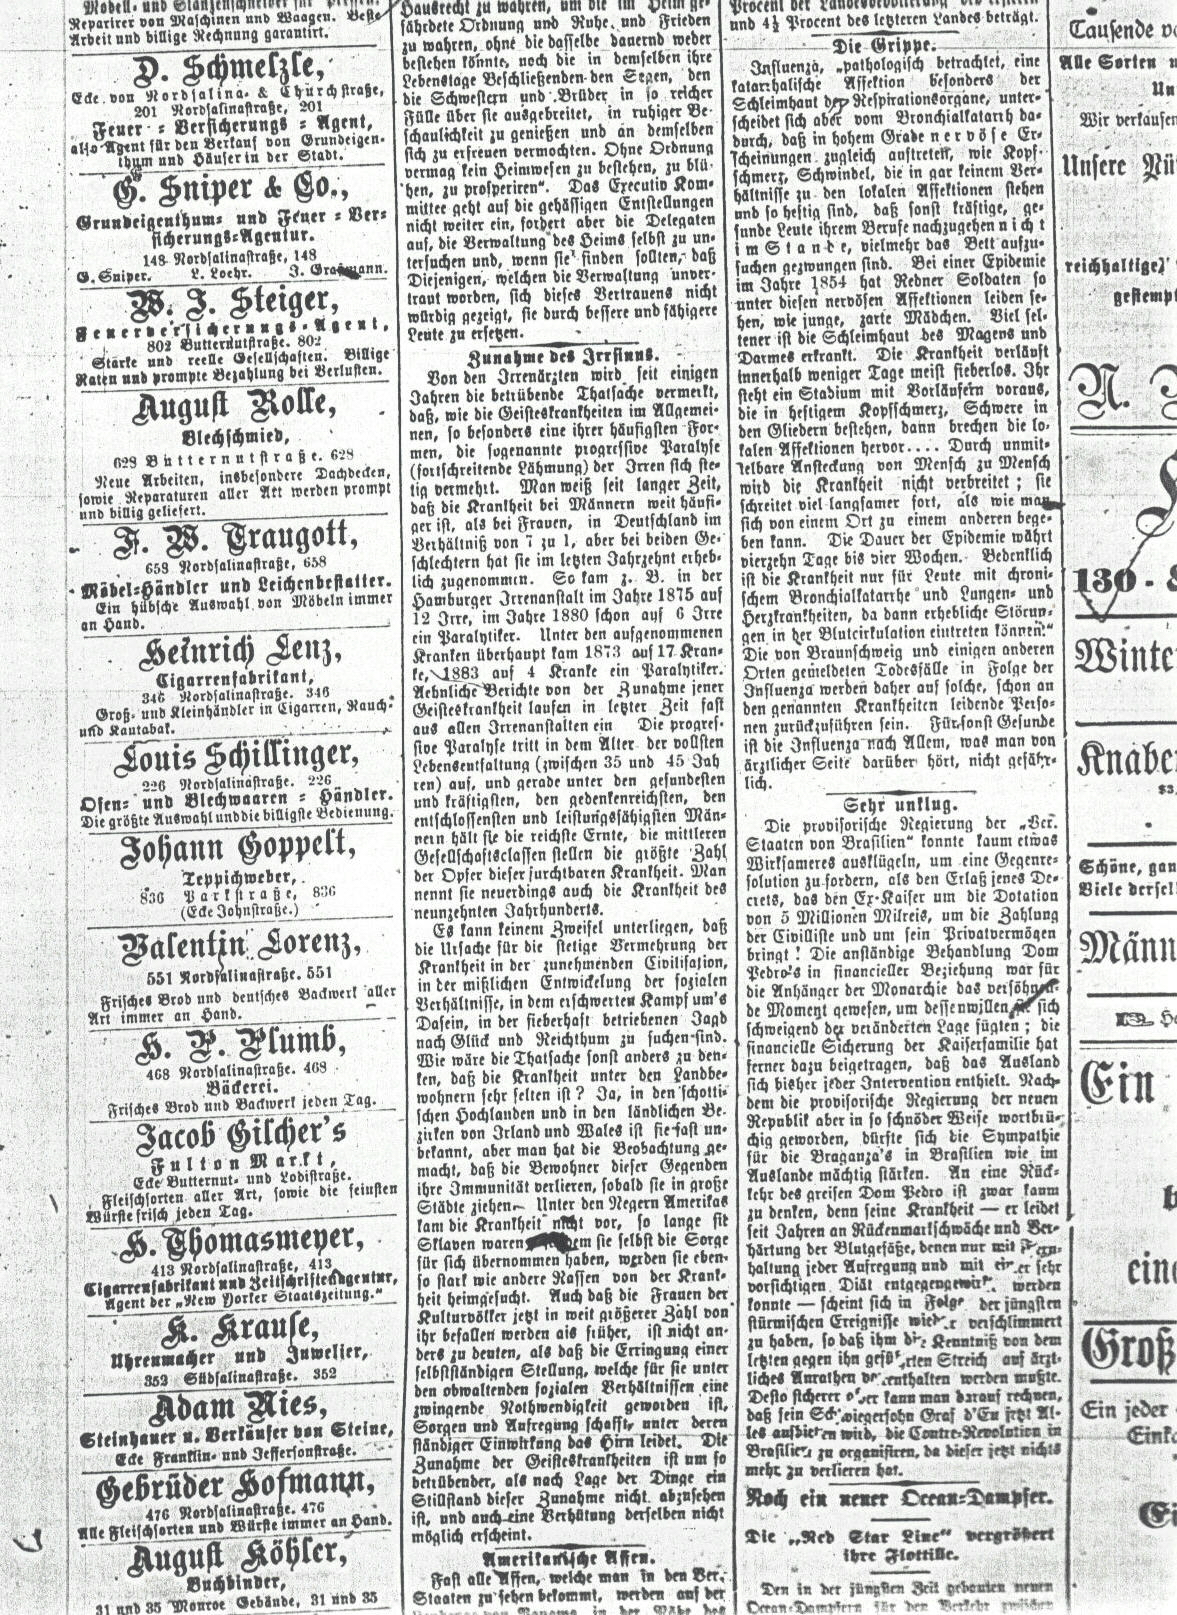 Syracuse Union, 2 January 1890, 
page 4